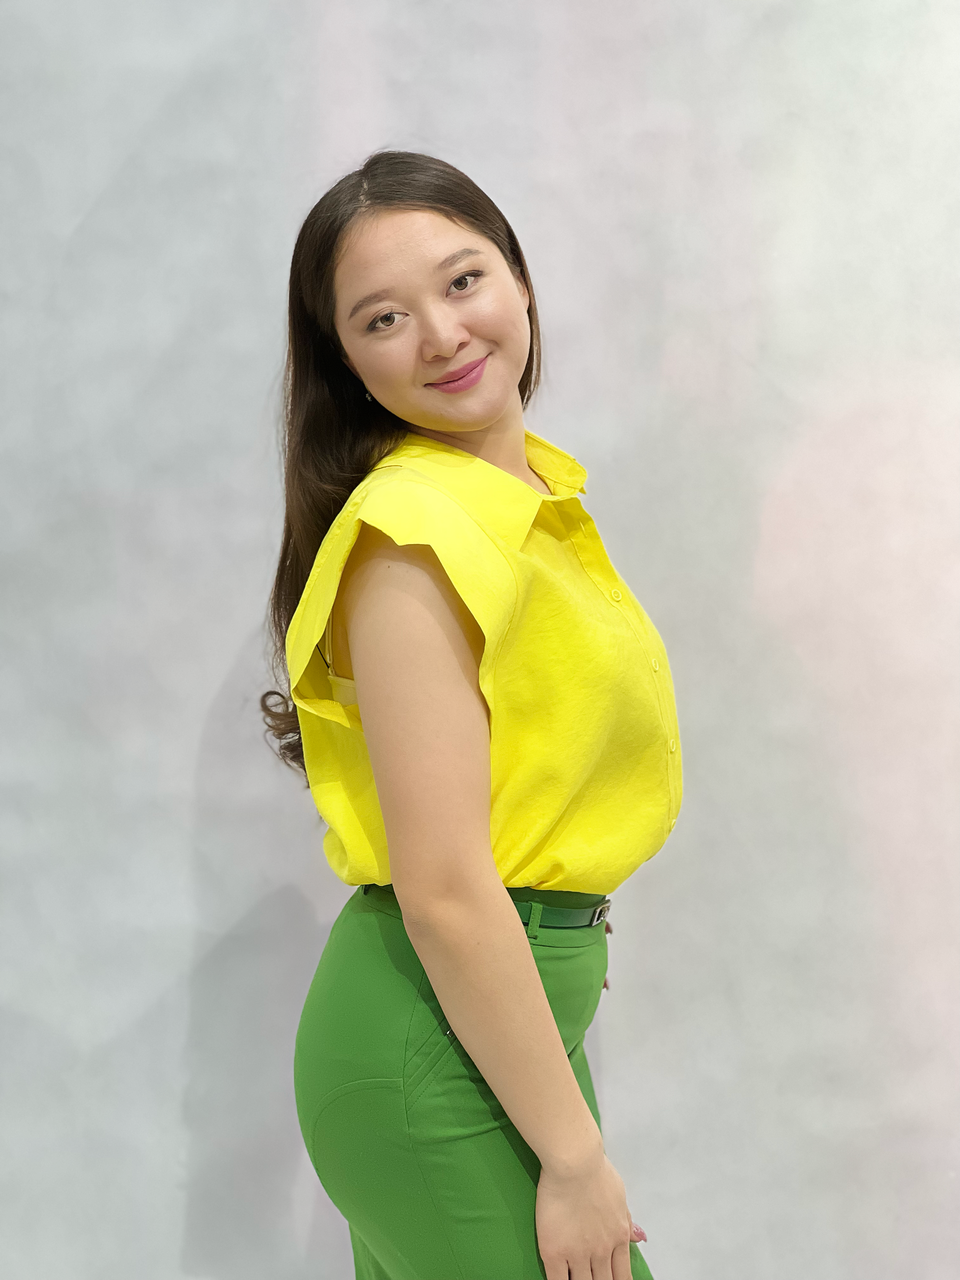 Женская блузка Seul / Размер: EUR 36-42. Цвет: Желтый. Состав: Хлопок.